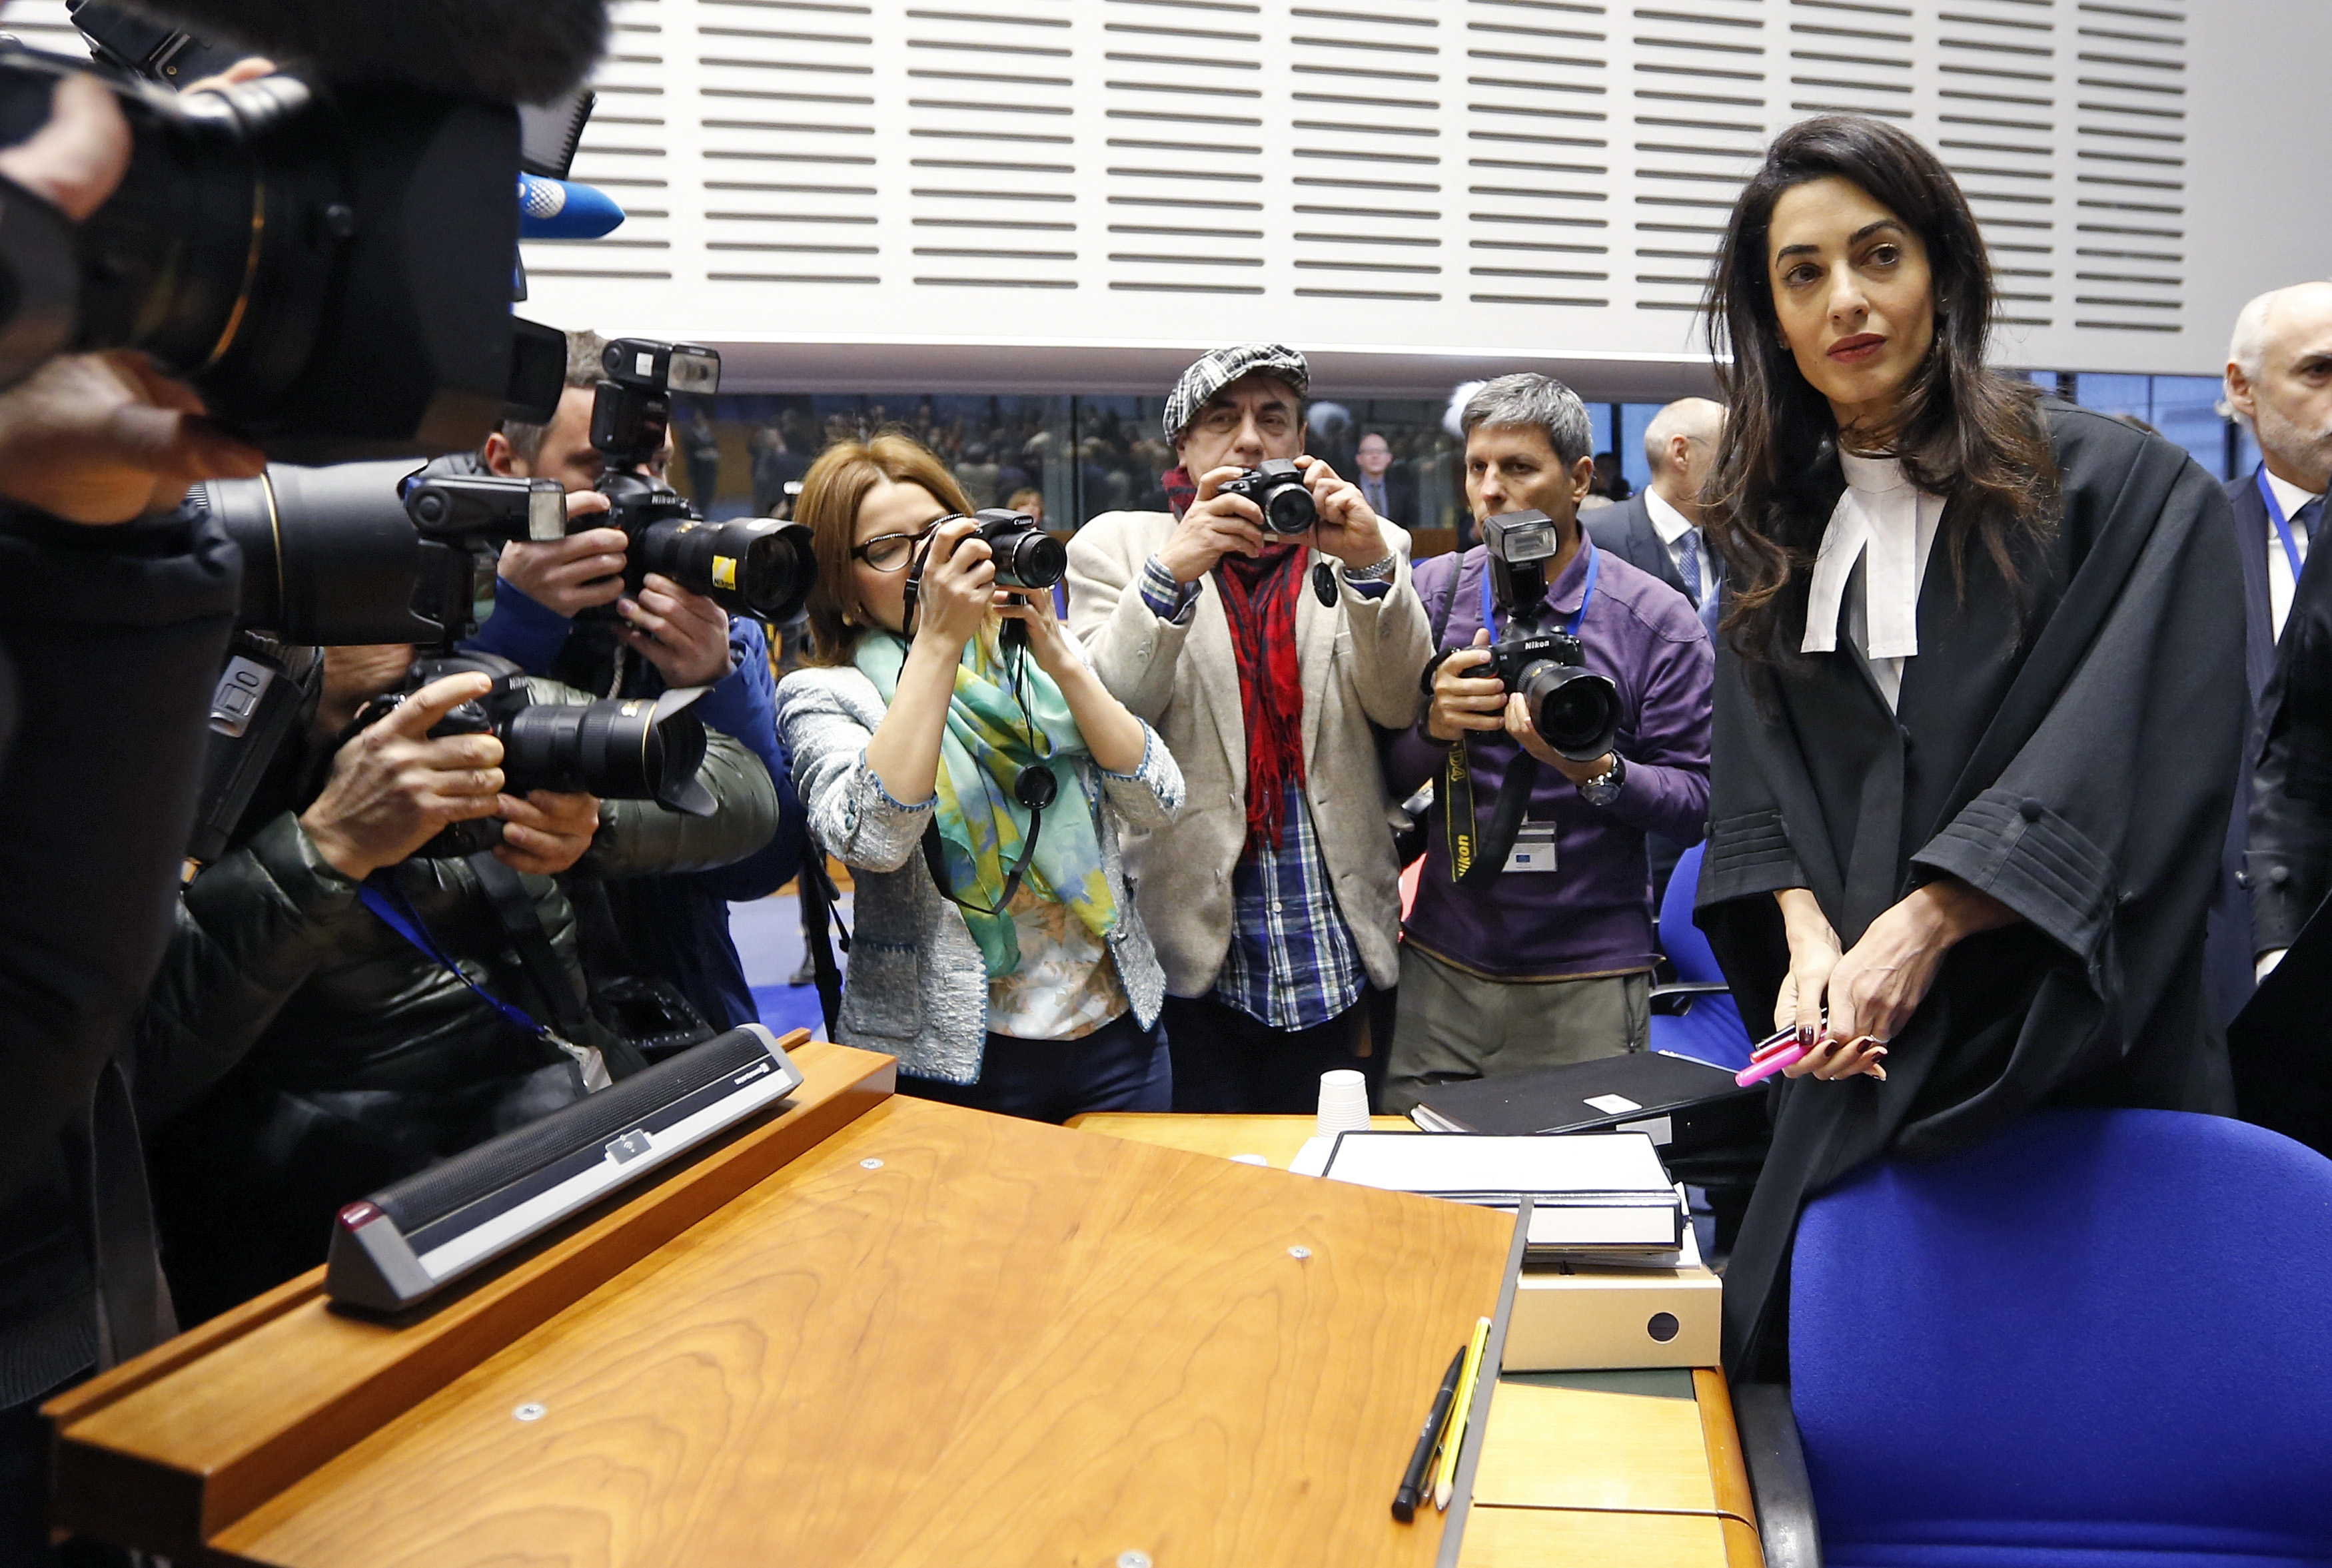 Le 28 janvier 2015. L'avocate des droits humains Amal Clooney arrive pour assister à une audition à la Cour européenne des droits humains à Strasbourg